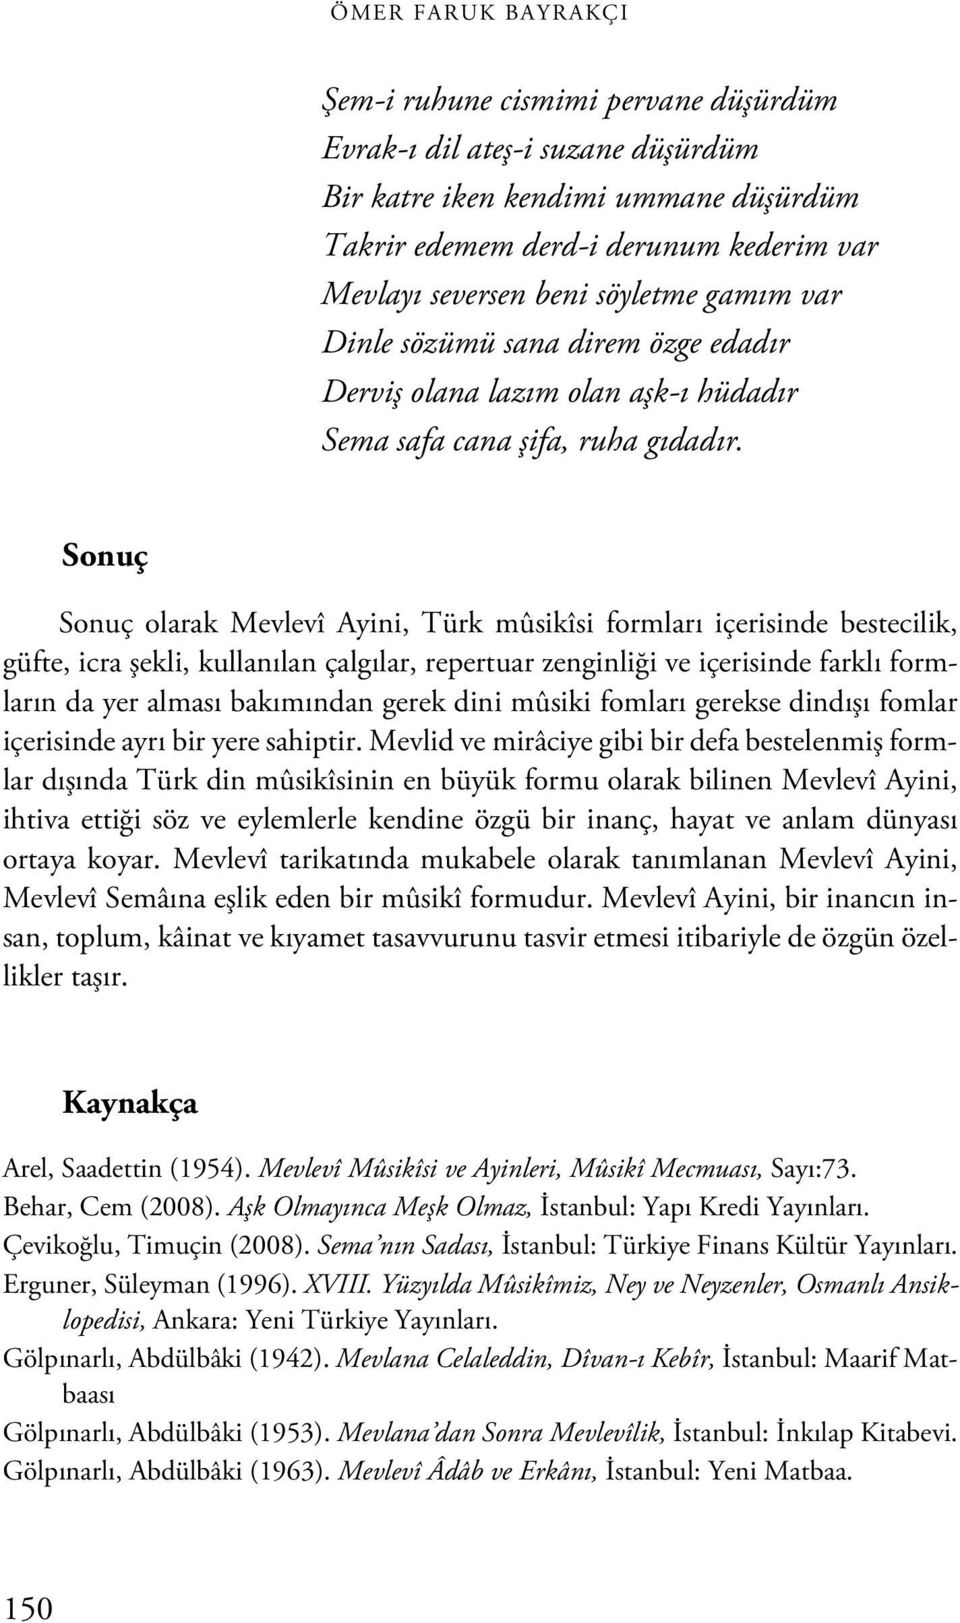 Sonuç Sonuç olarak Mevlevî Ayini, Türk mûsikîsi formları içerisinde bestecilik, güfte, icra şekli, kullanılan çalgılar, repertuar zenginliği ve içerisinde farklı formların da yer alması bakımından